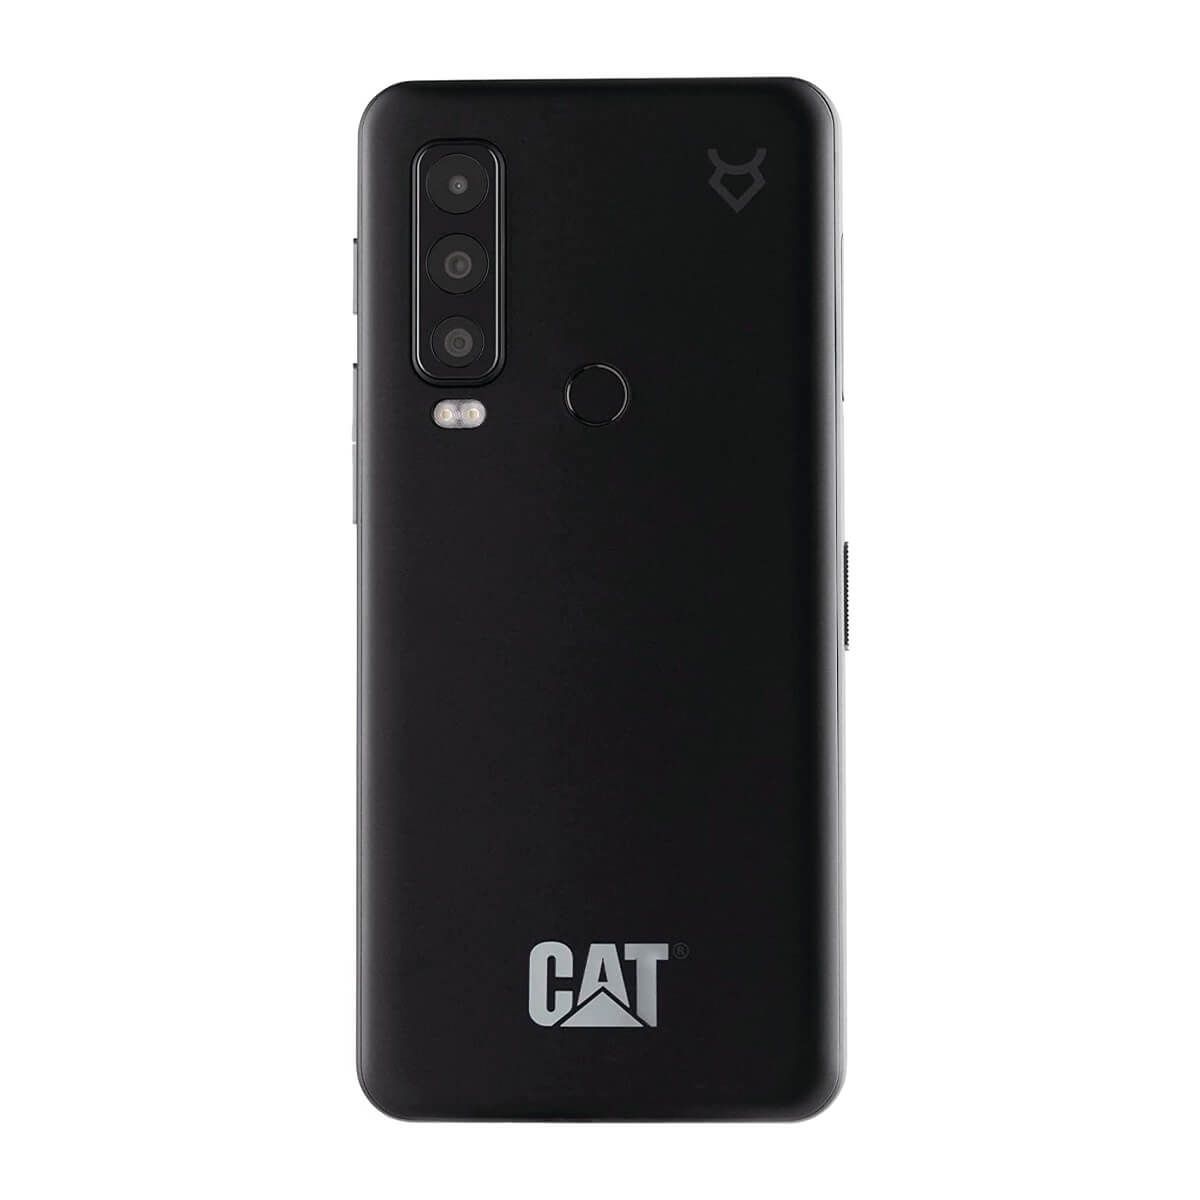 Caterpilar CAT S62 Pro 6GB/128GB Black (Black) Dual SIM